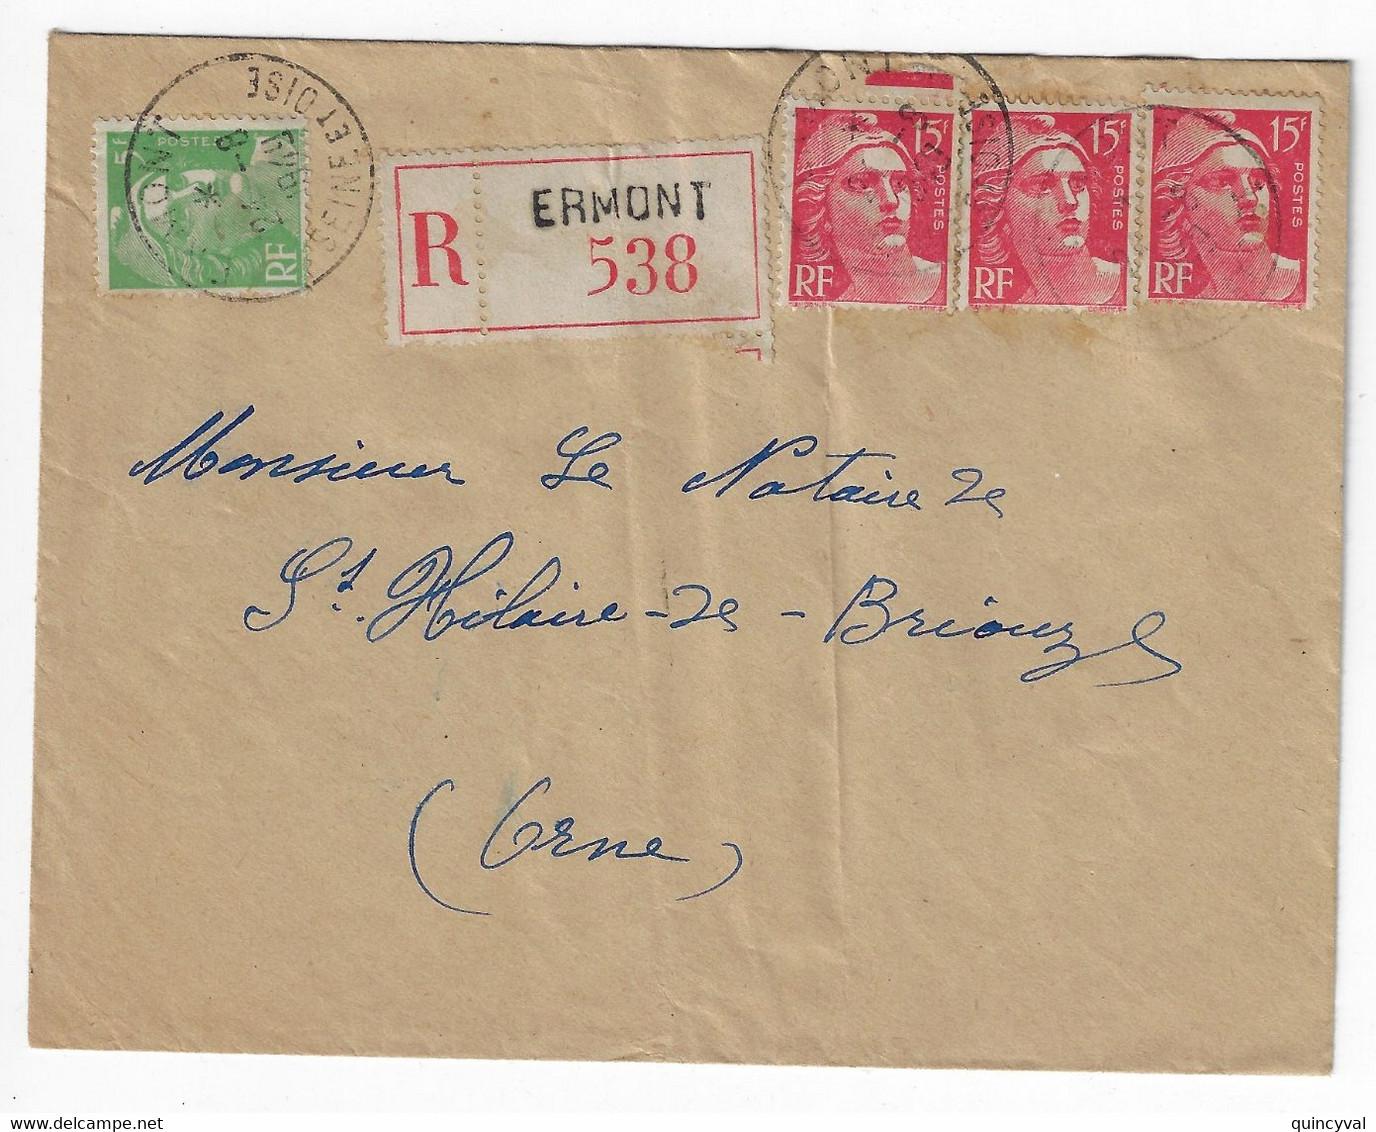 ERMONT Seine Et Oise Lettre Recommandée  5F Vert 15 F Gandon Etiquette Yv 813 809 Ob 24 8 1949 - Storia Postale